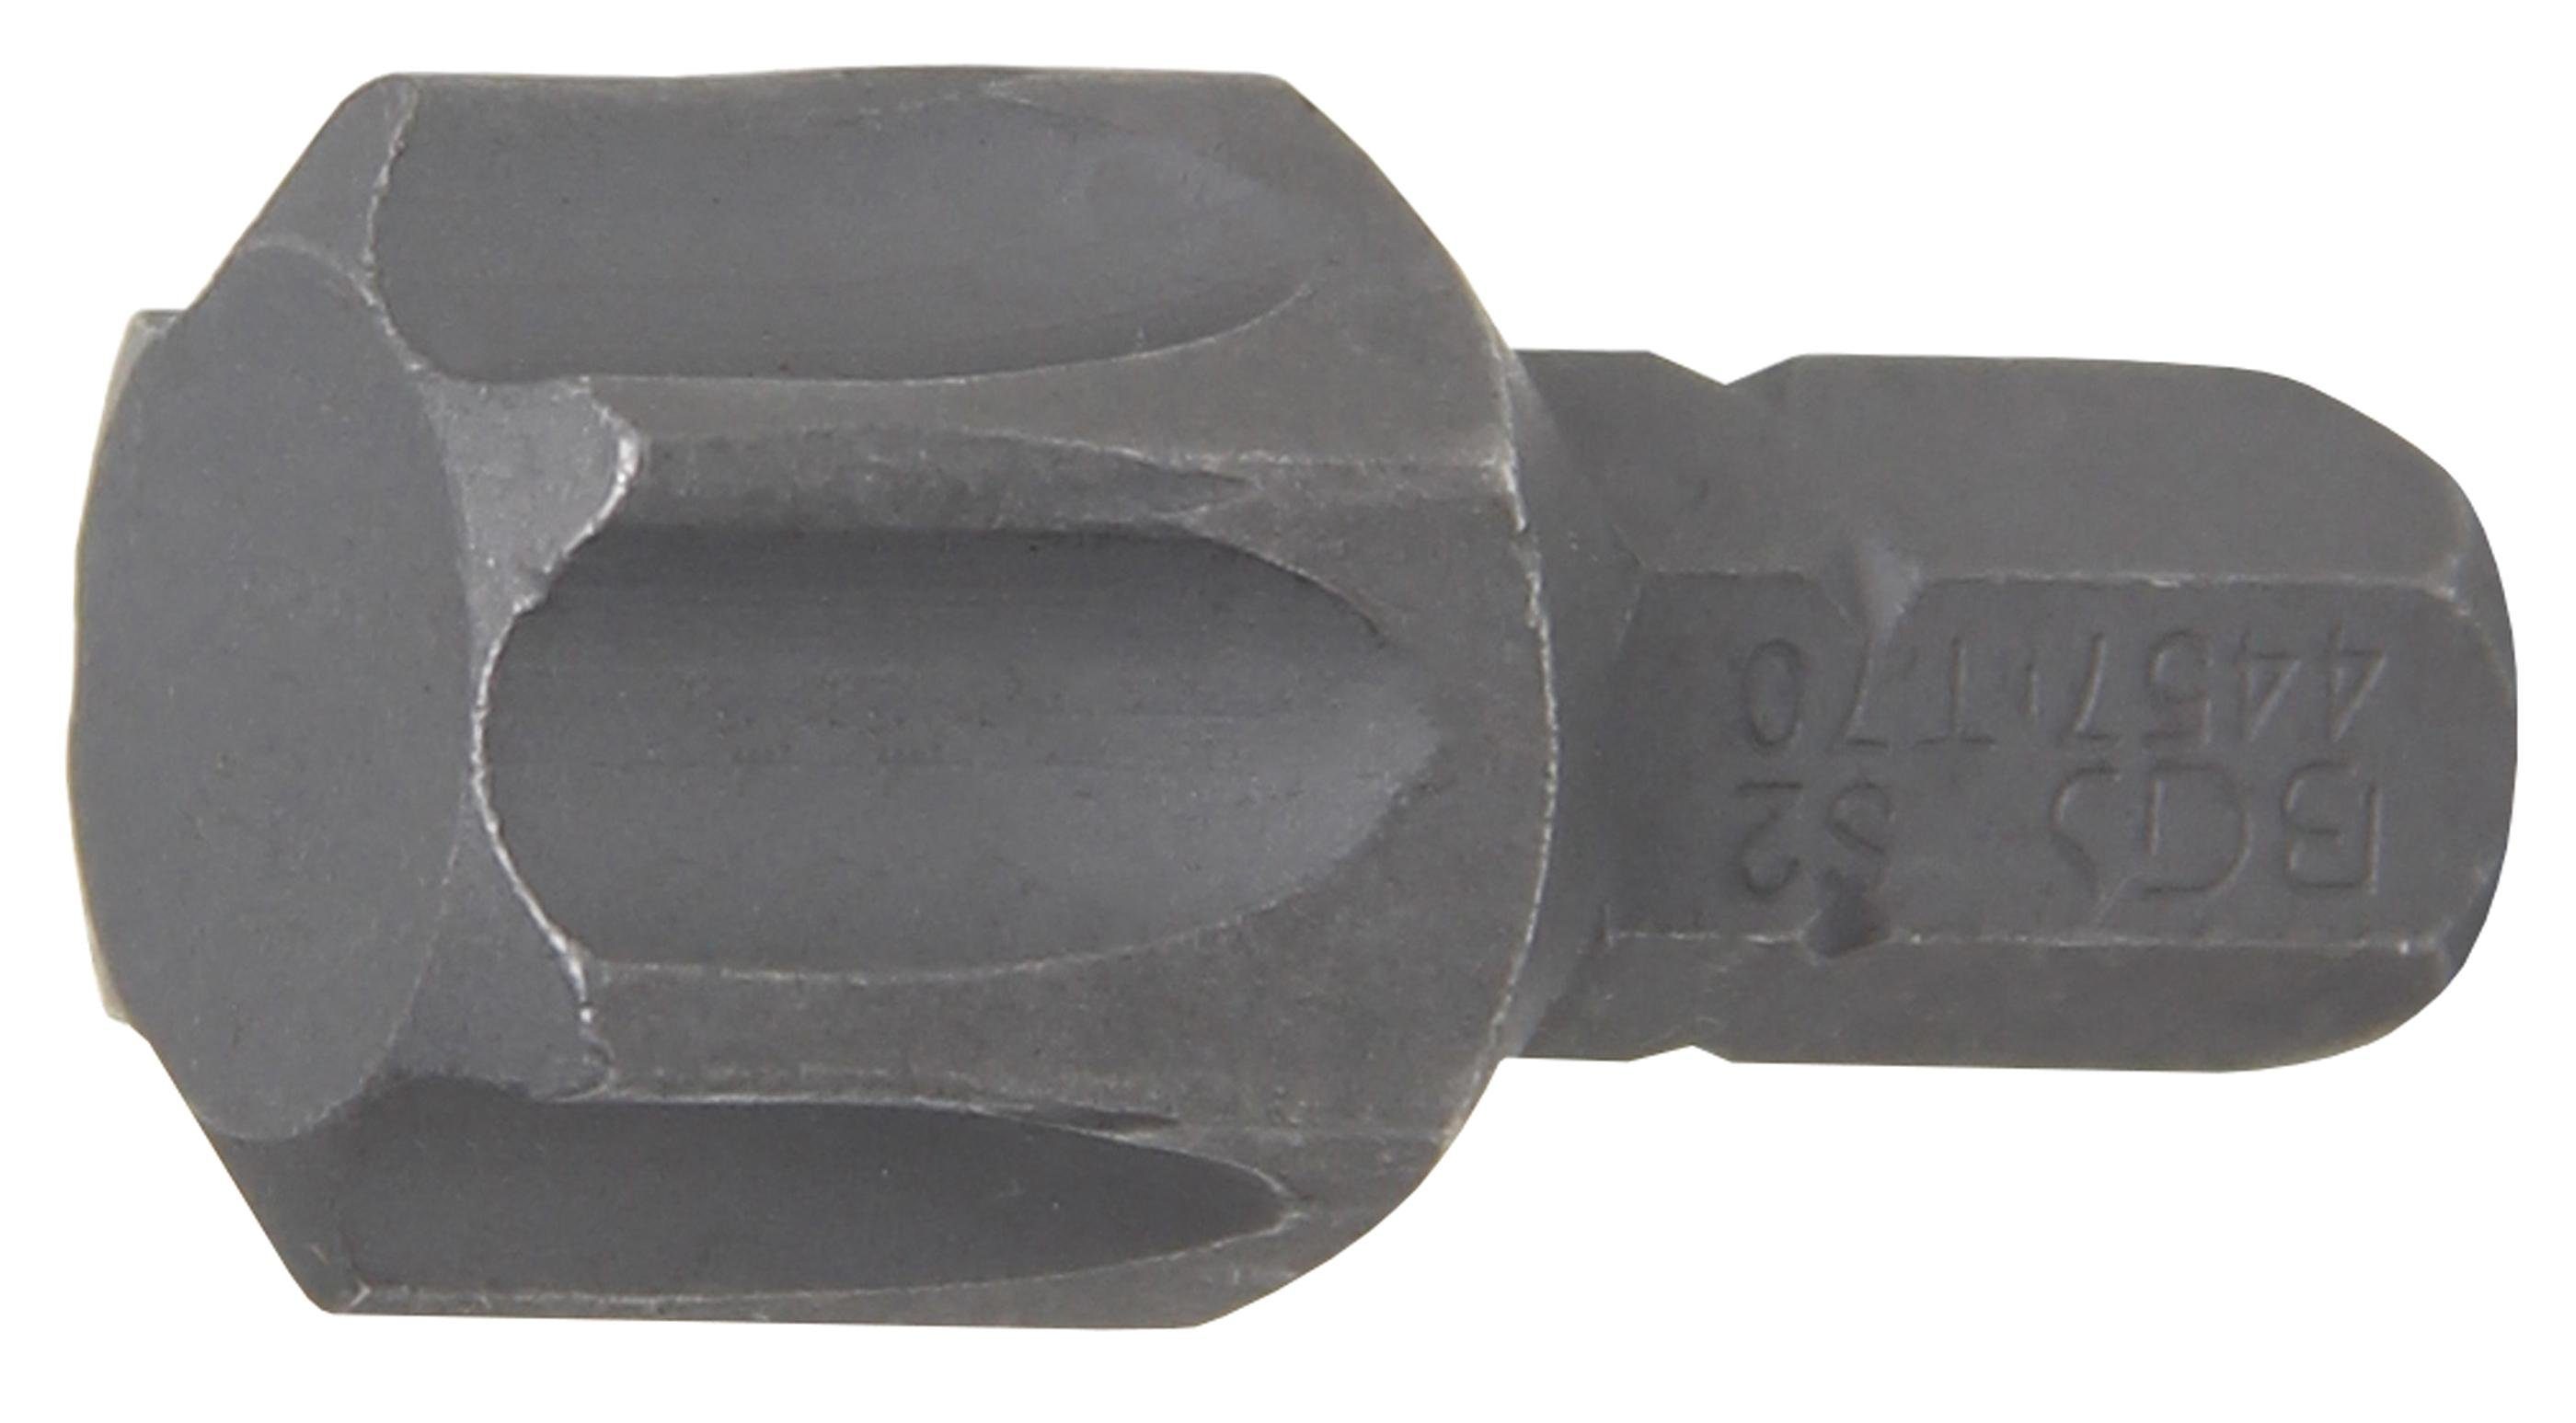 BGS technic Bit-Schraubendreher Bit, Antrieb Außensechskant 8 mm (5/16), T-Profil (für Torx) T70 | Schraubendreher